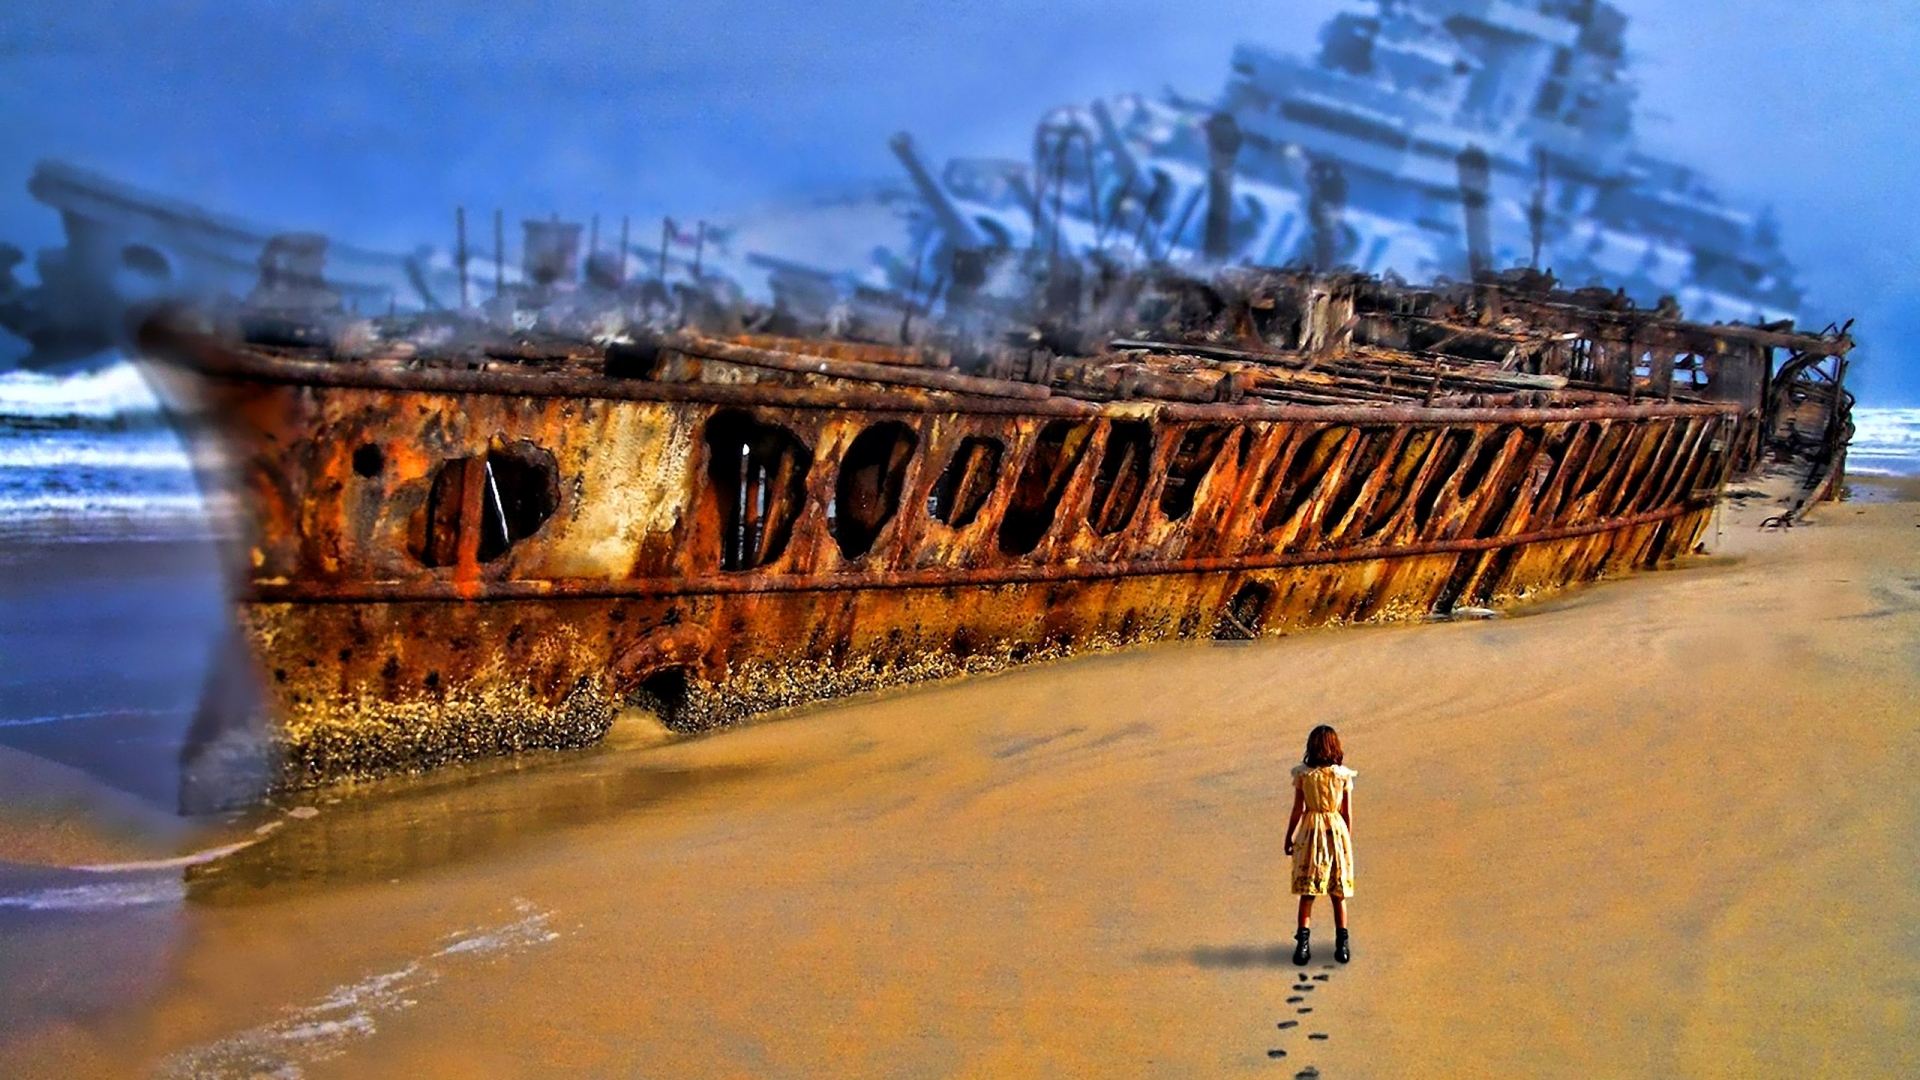 Разрушенный корабль